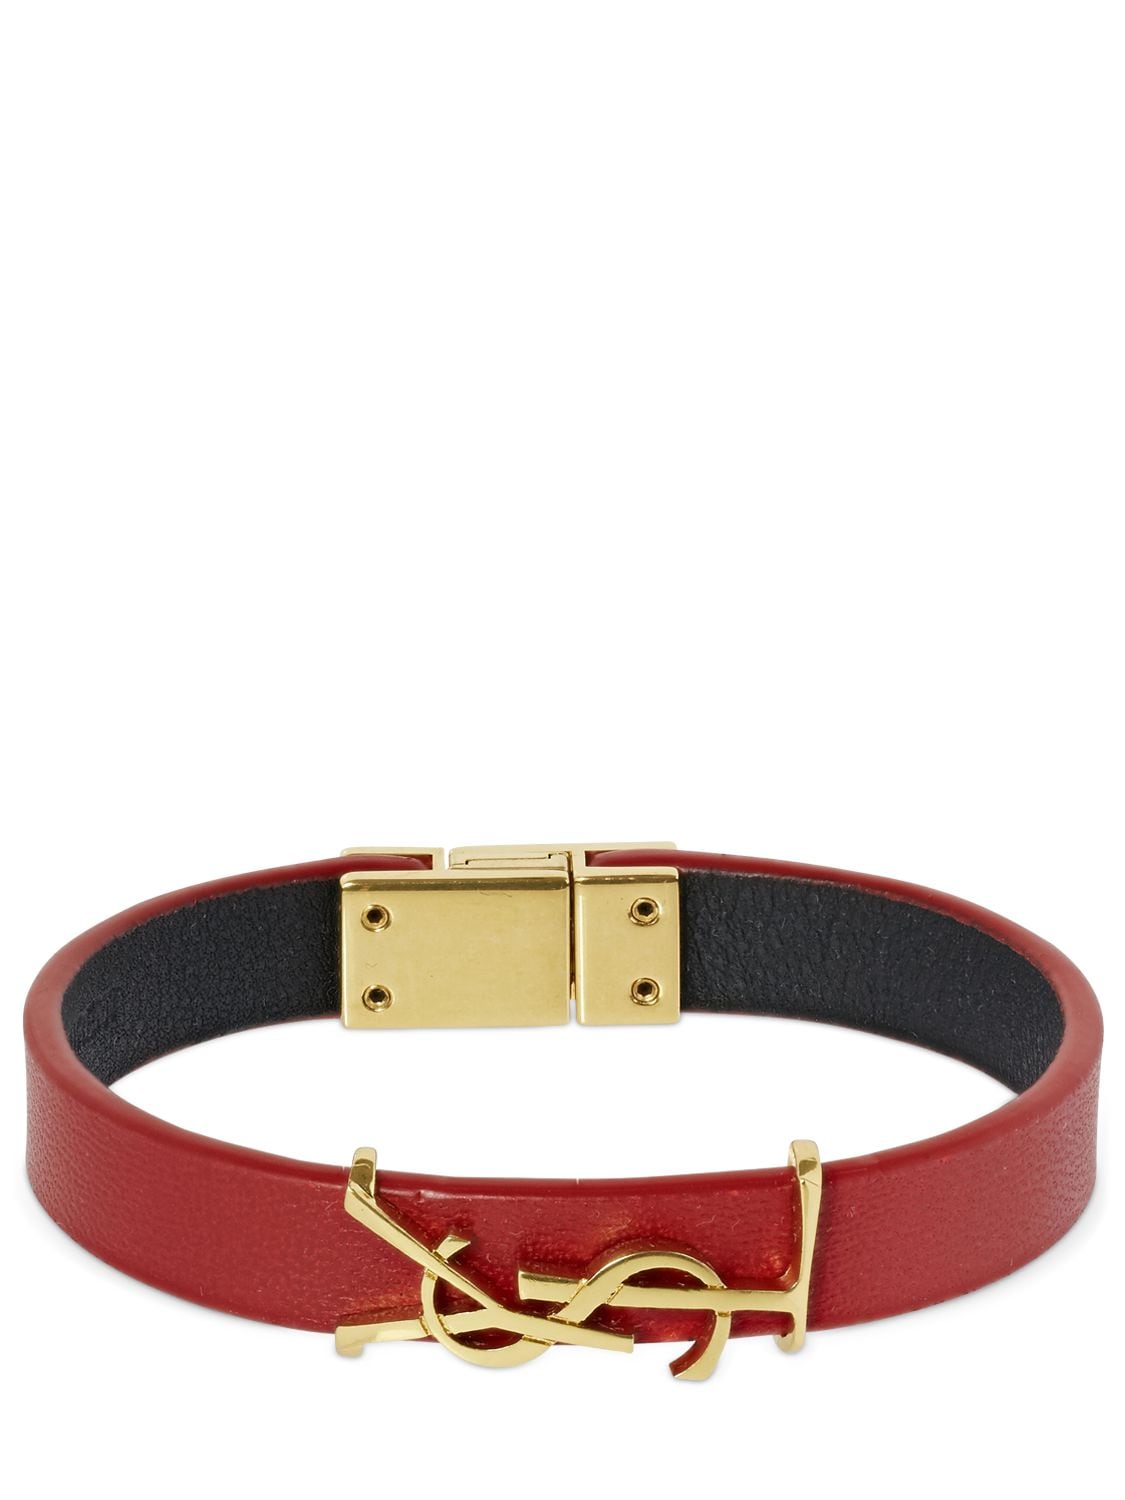 SAINT LAURENT Single Wrap Ysl Leather Bracelet